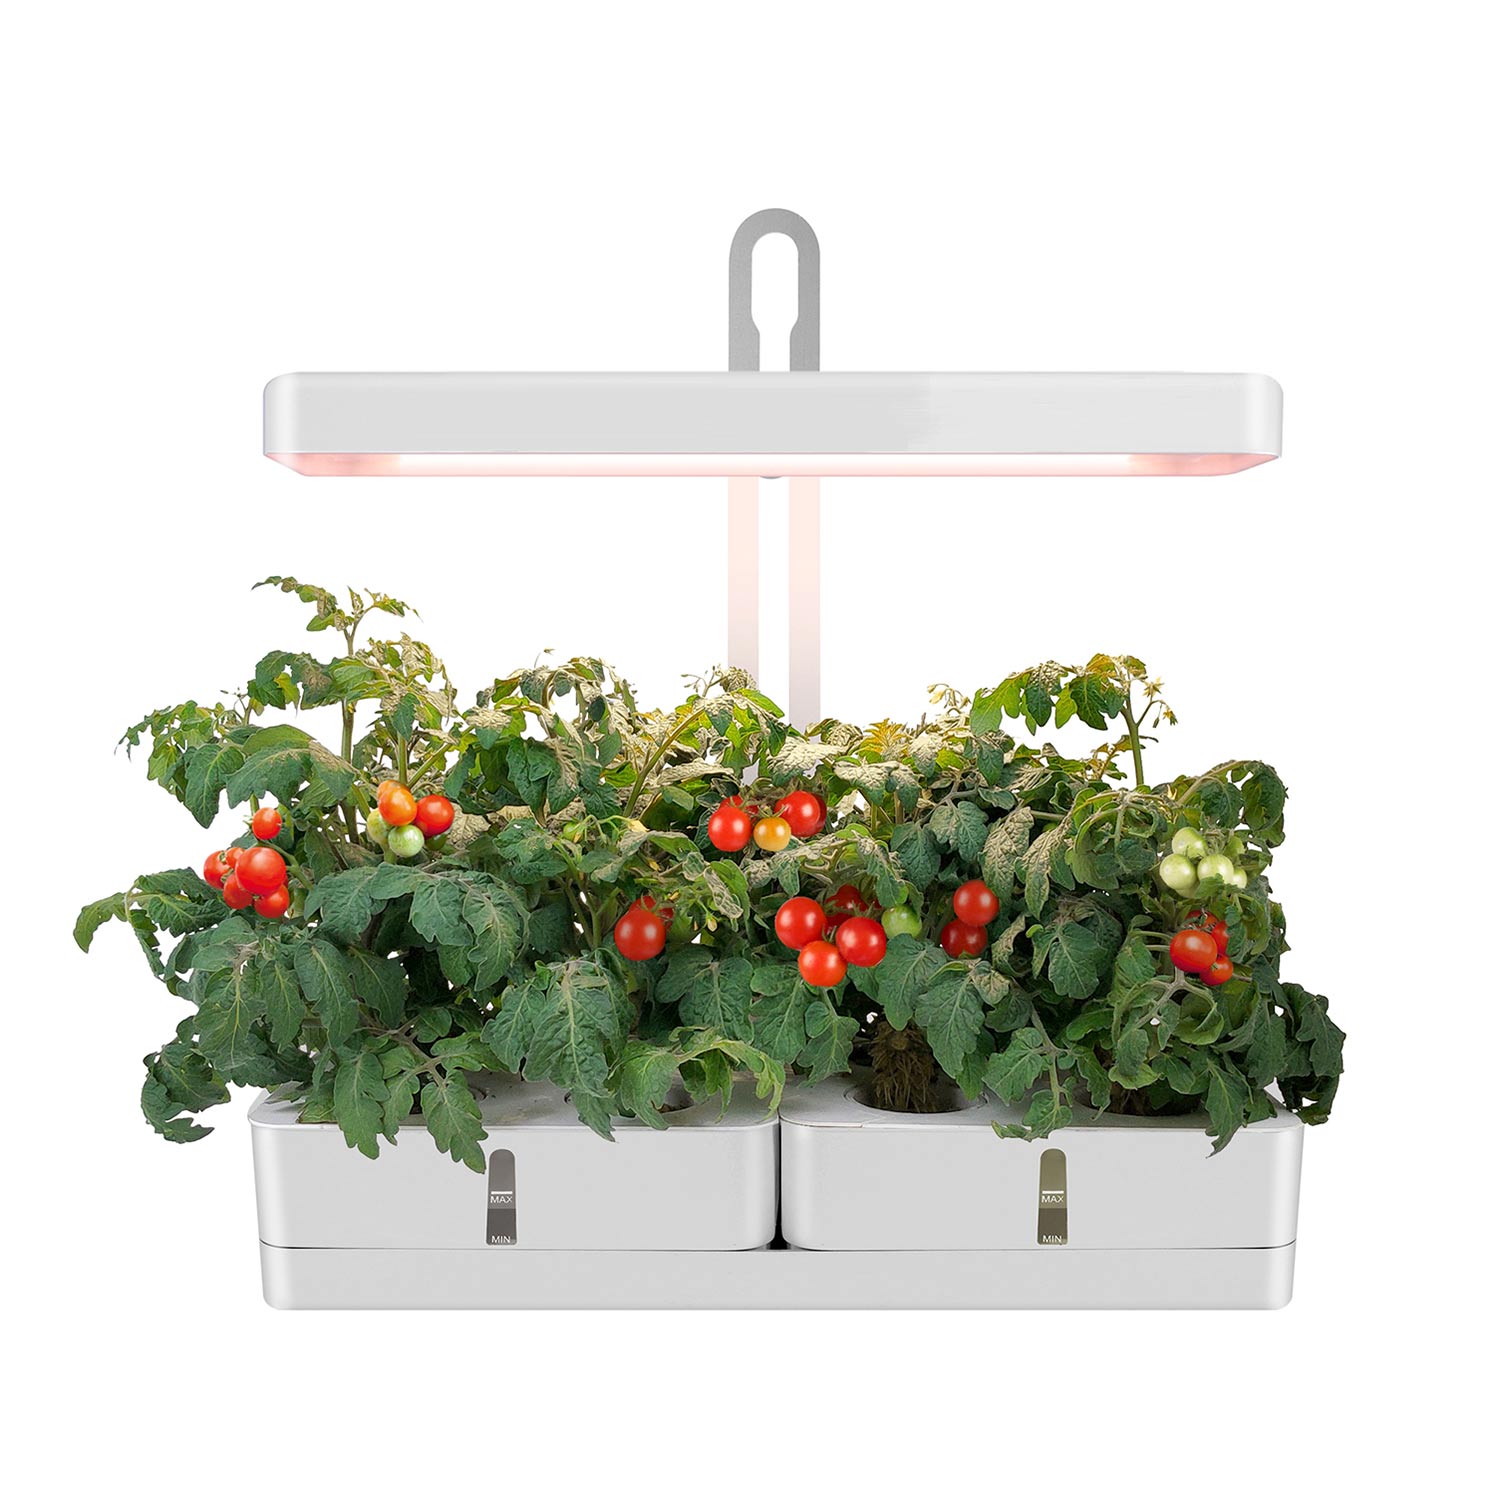 MG102 Indendørs hydroponiske planter Haveurt Smart Havearbejde Indendørs grøntsagshavesæt